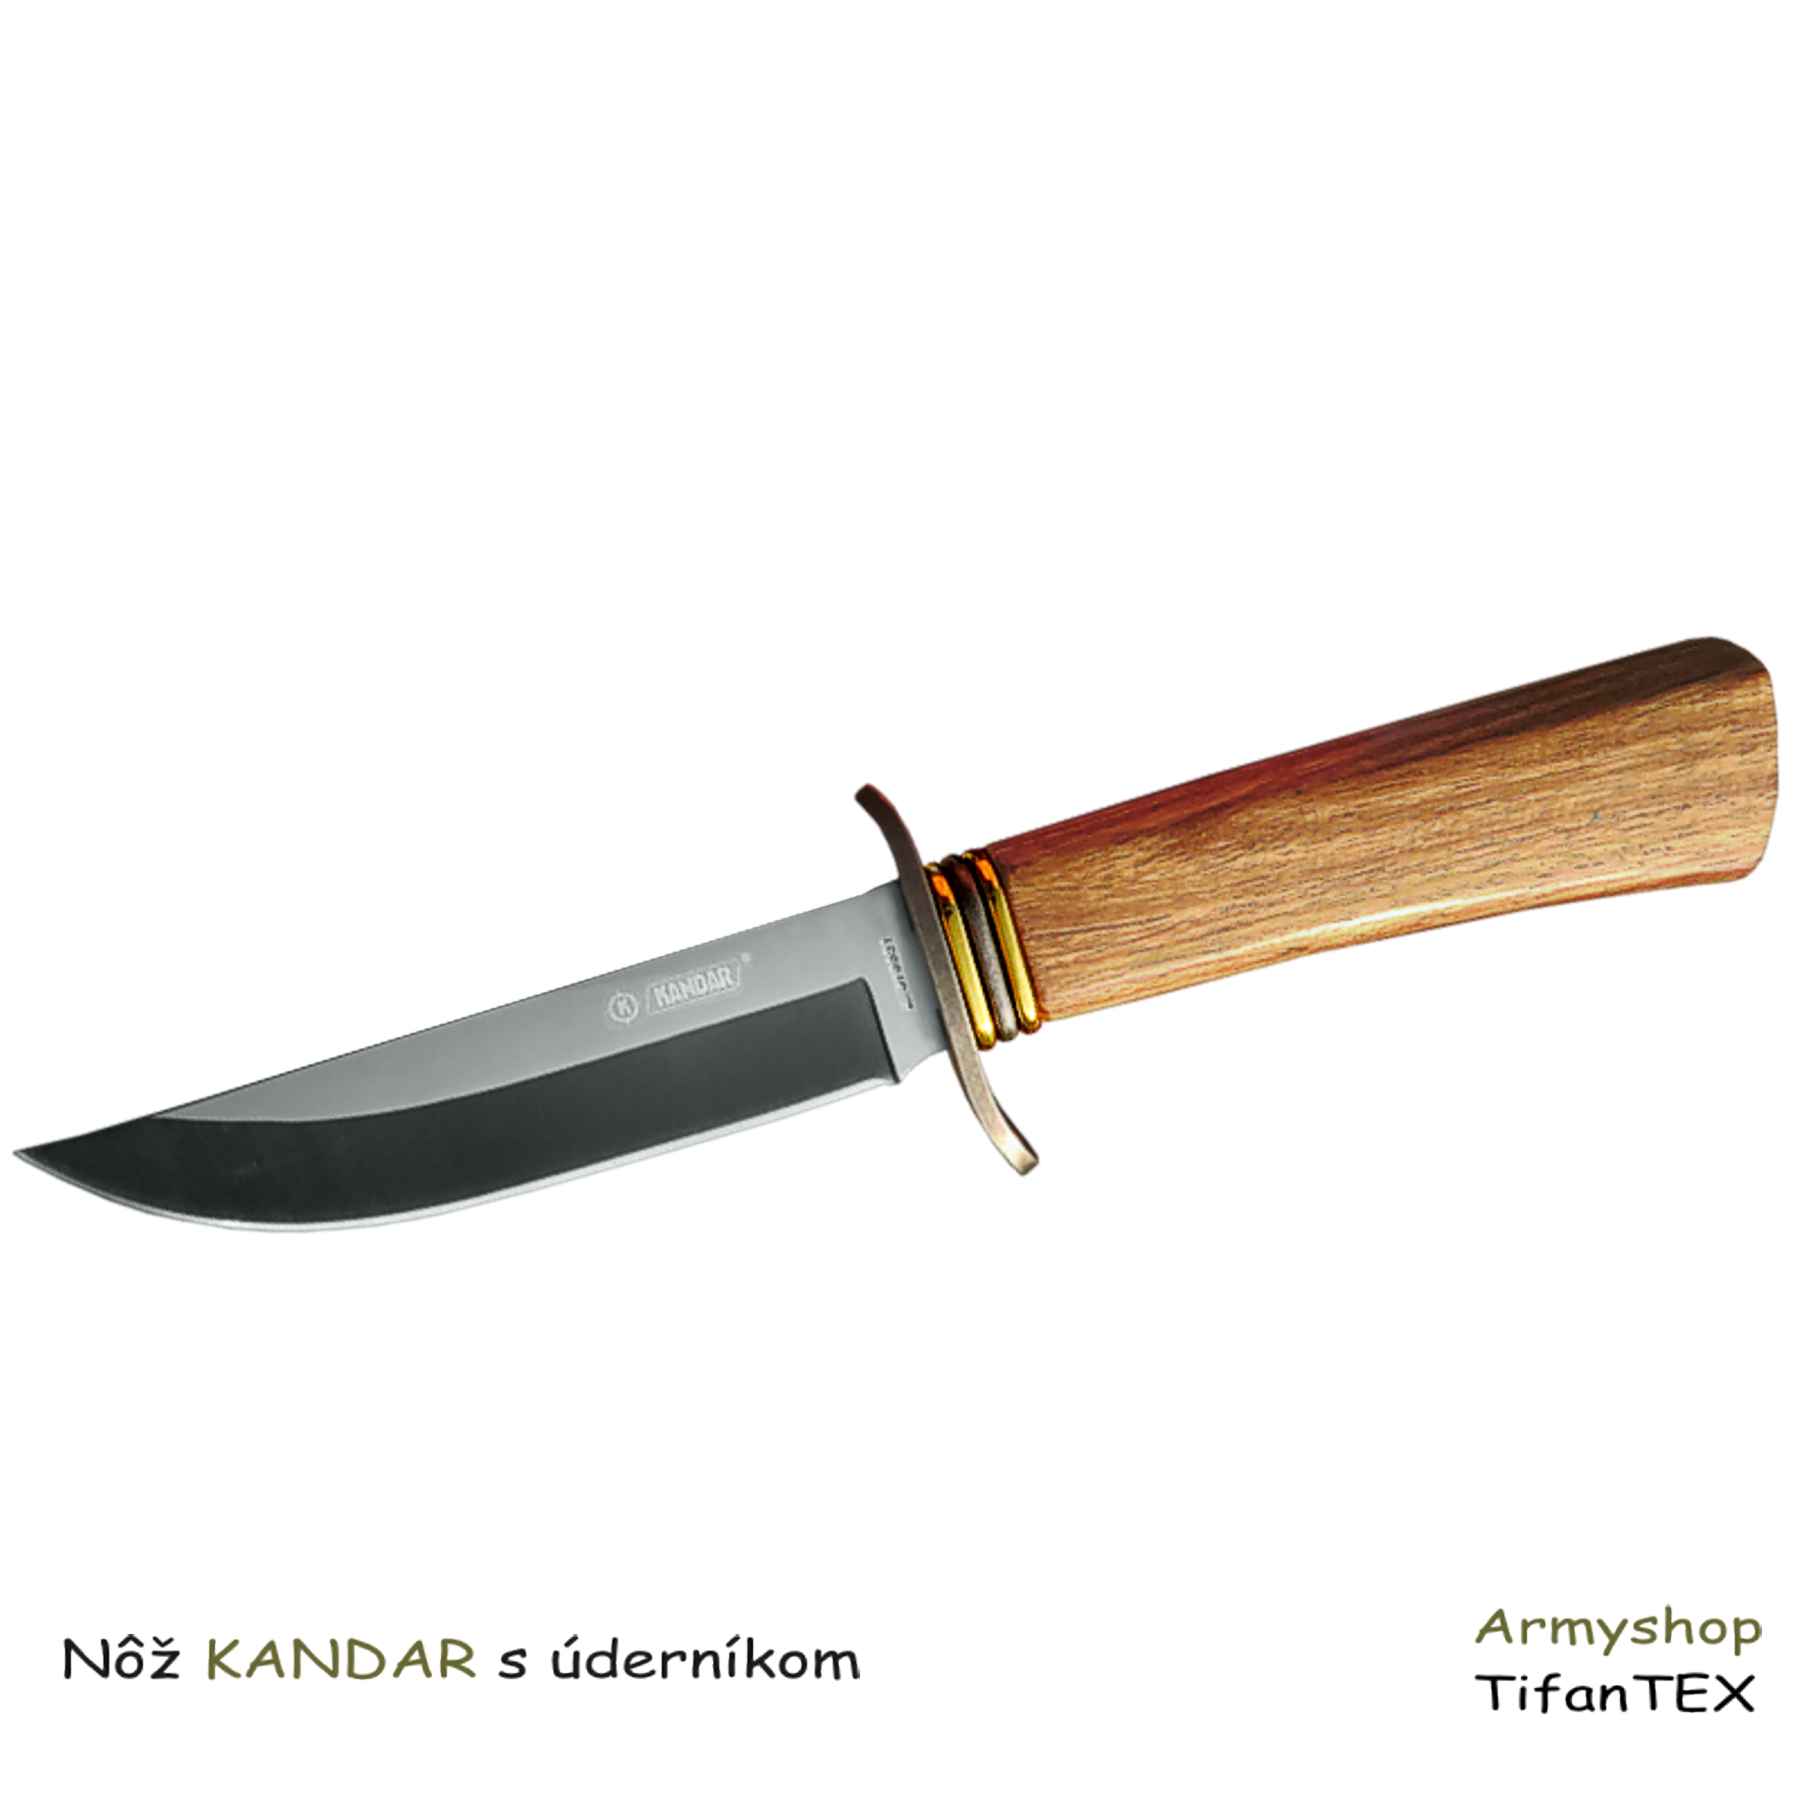 Nôž KANDAR s úderníkom